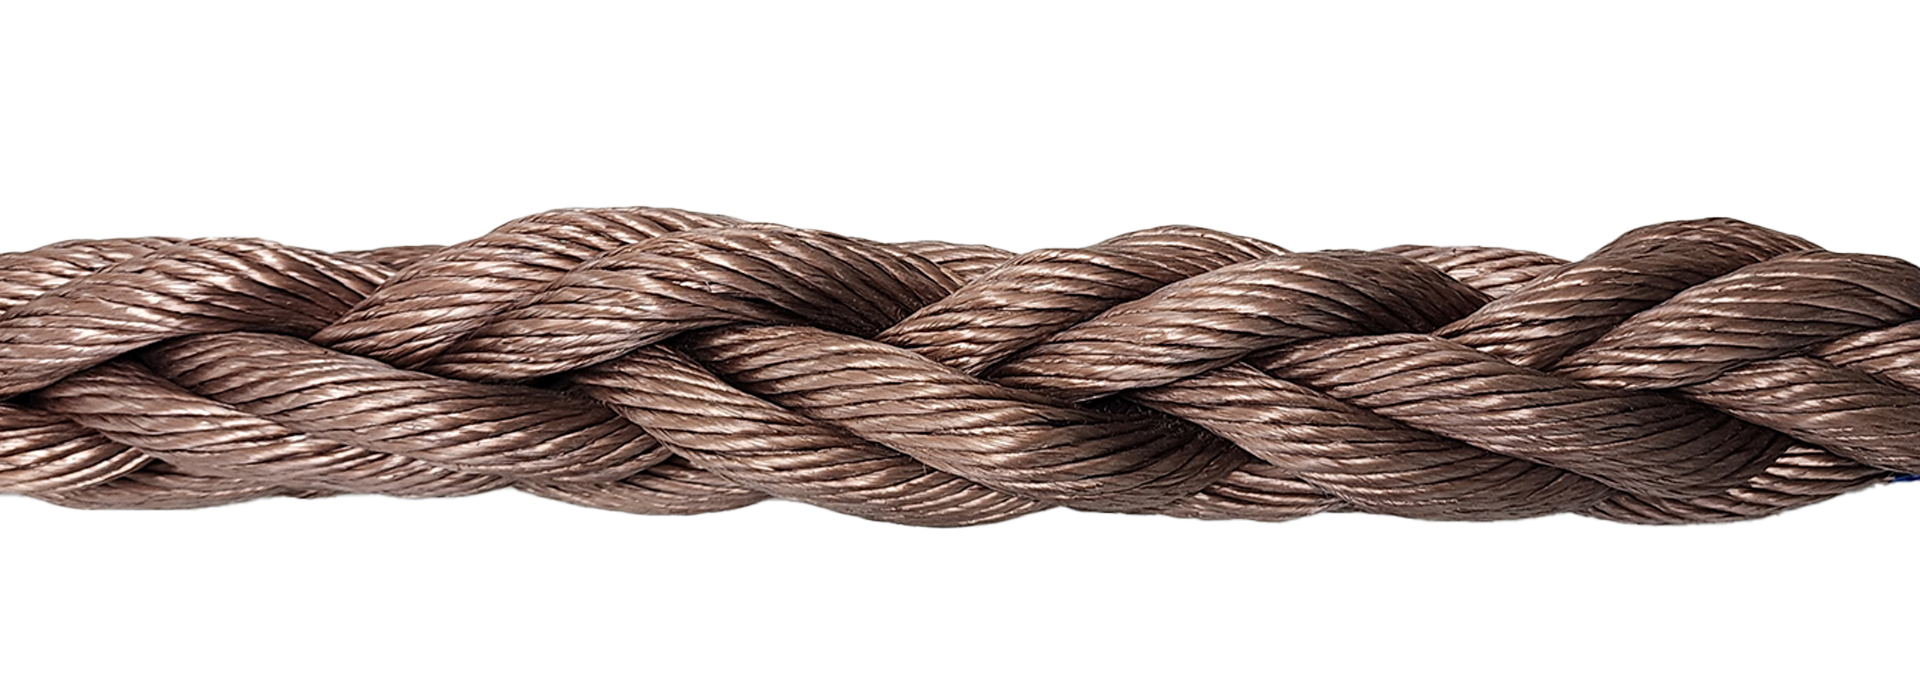 V2 technology for ropes - Garware Technical Fibres Ltd.